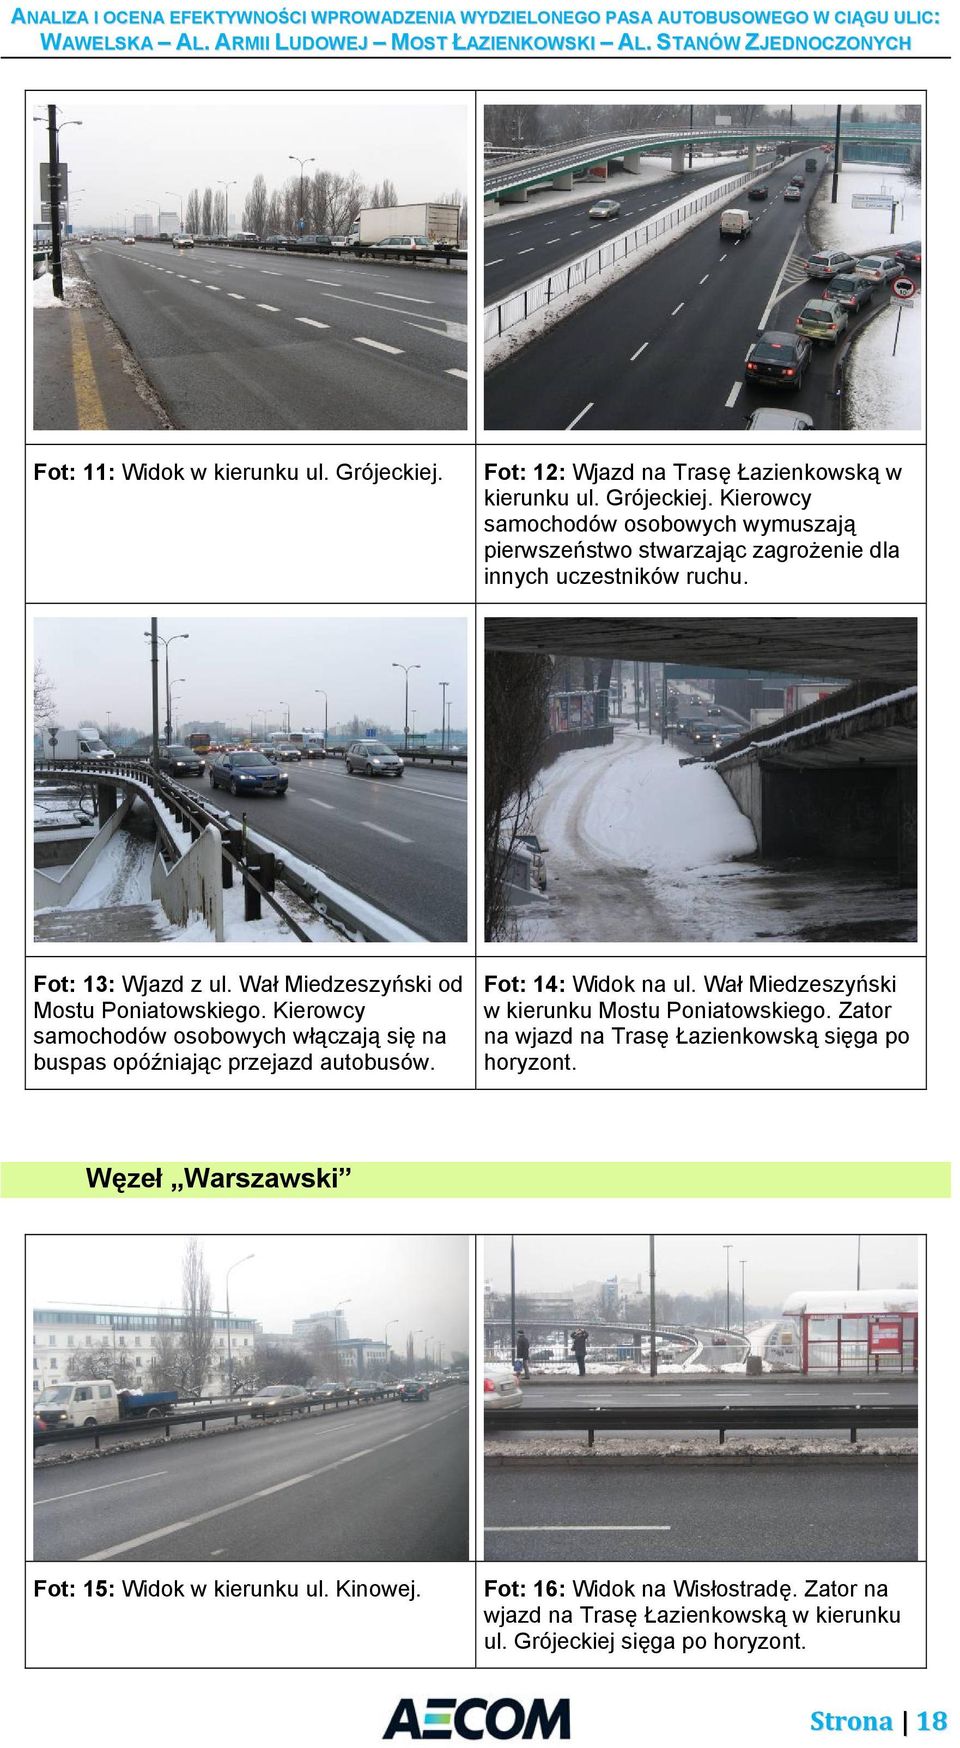 Fot: 14: Widok na ul. Wał Miedzeszyński w kierunku Mostu Poniatowskiego. Zator na wjazd na Trasę Łazienkowską sięga po horyzont.